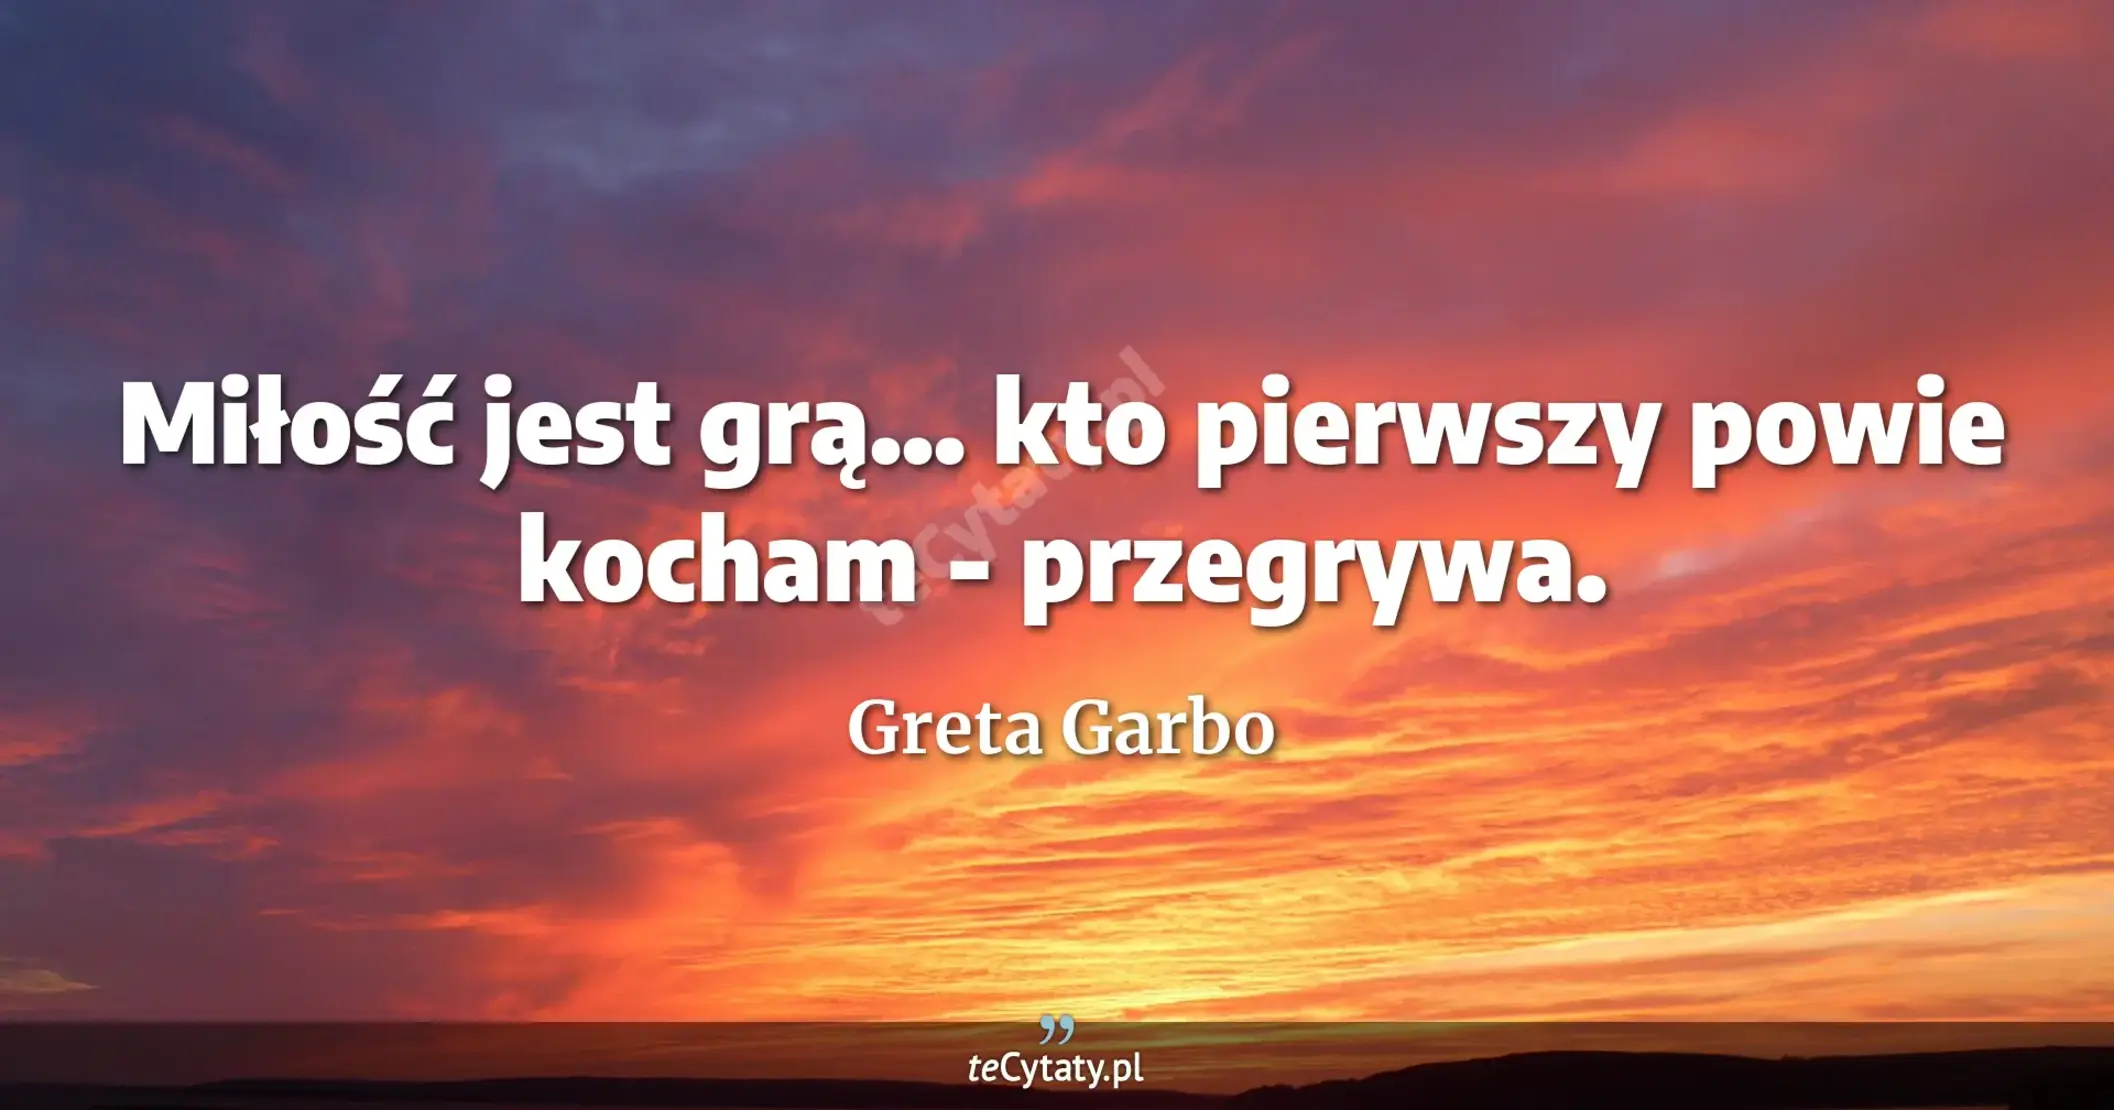 Miłość jest grą... kto pierwszy powie kocham - przegrywa. - Greta Garbo